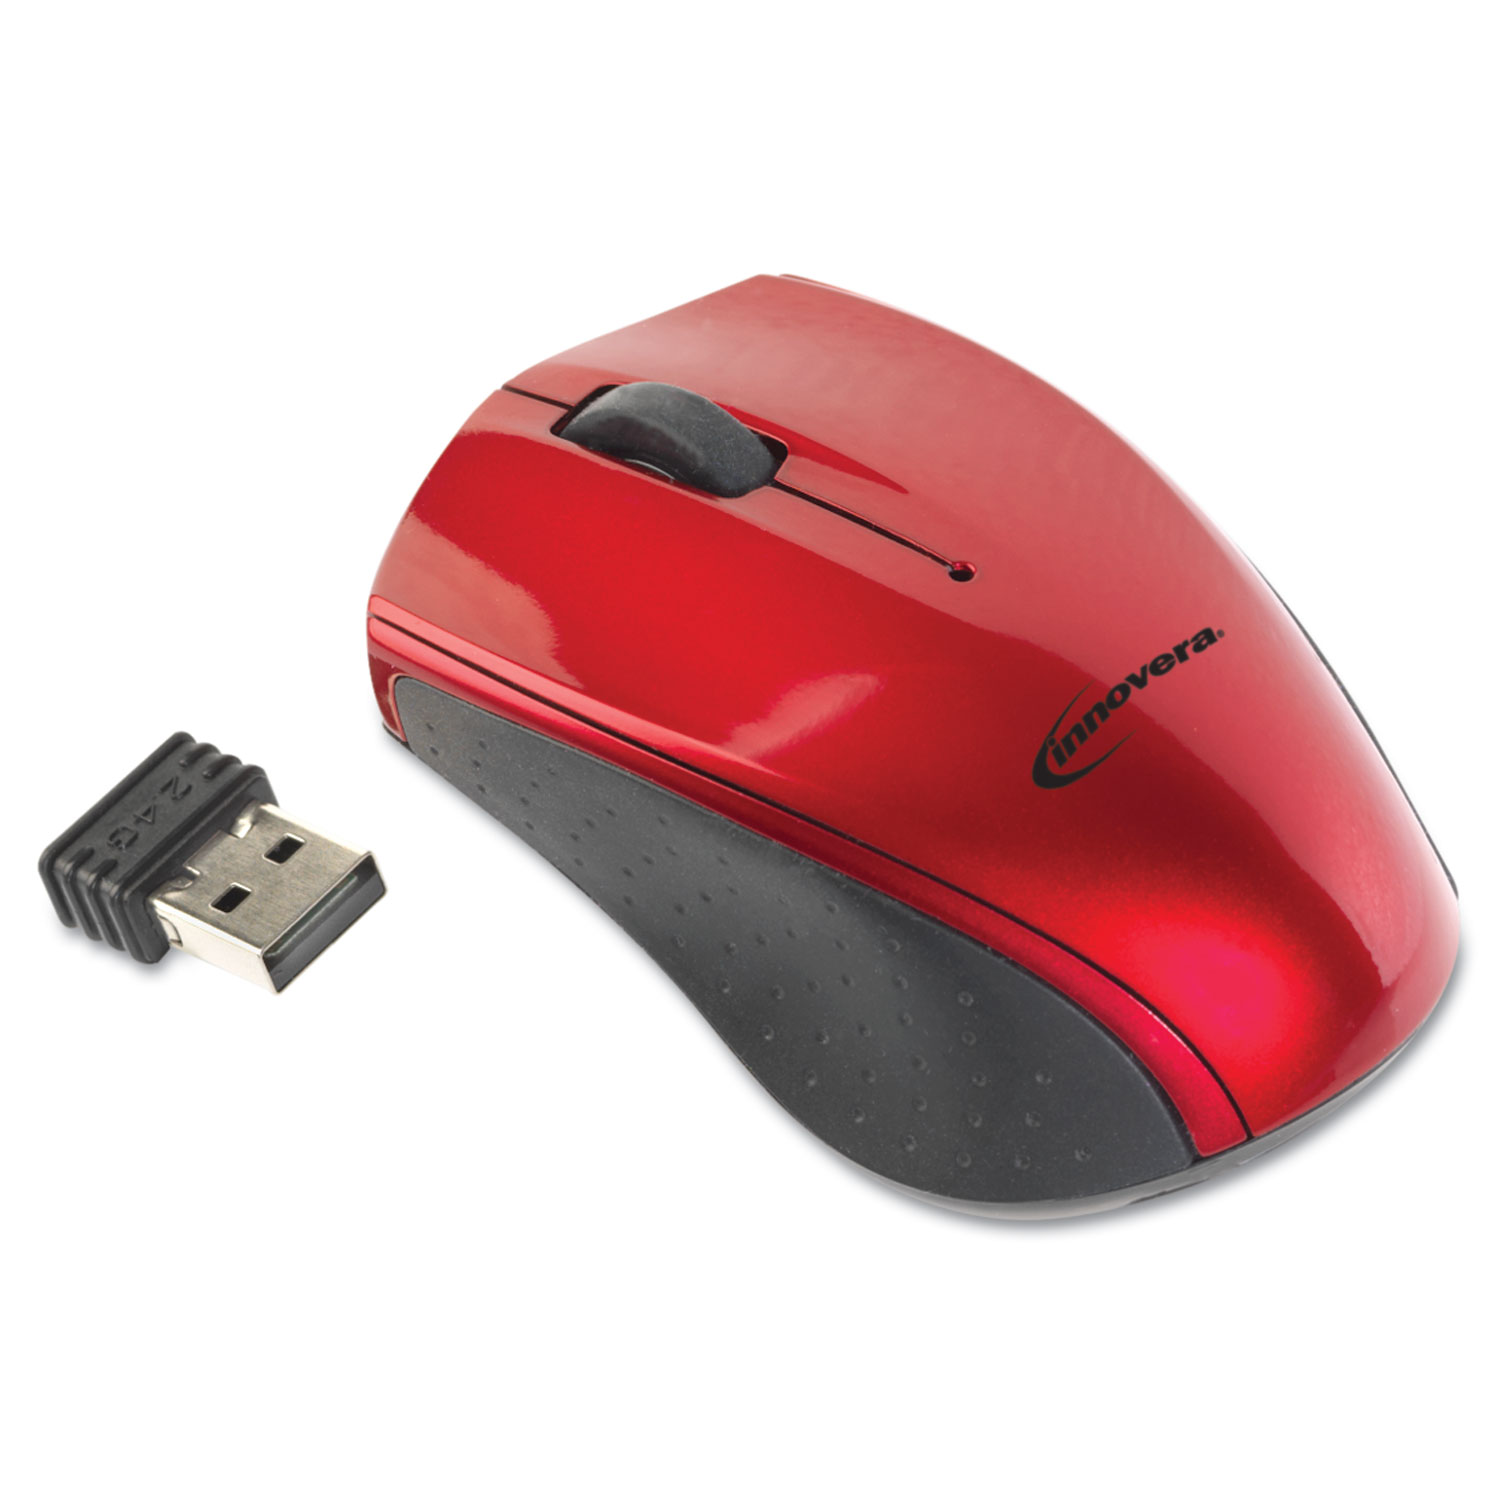 Беспроводная мышь красная. Мышь Logitech m171 Red Optical Mouse Wireless. Logitech m171 Red Black. Faison мышь беспроводная m6. Мышь беспроводная Logitech m171 оптическая Black/Red 062870.